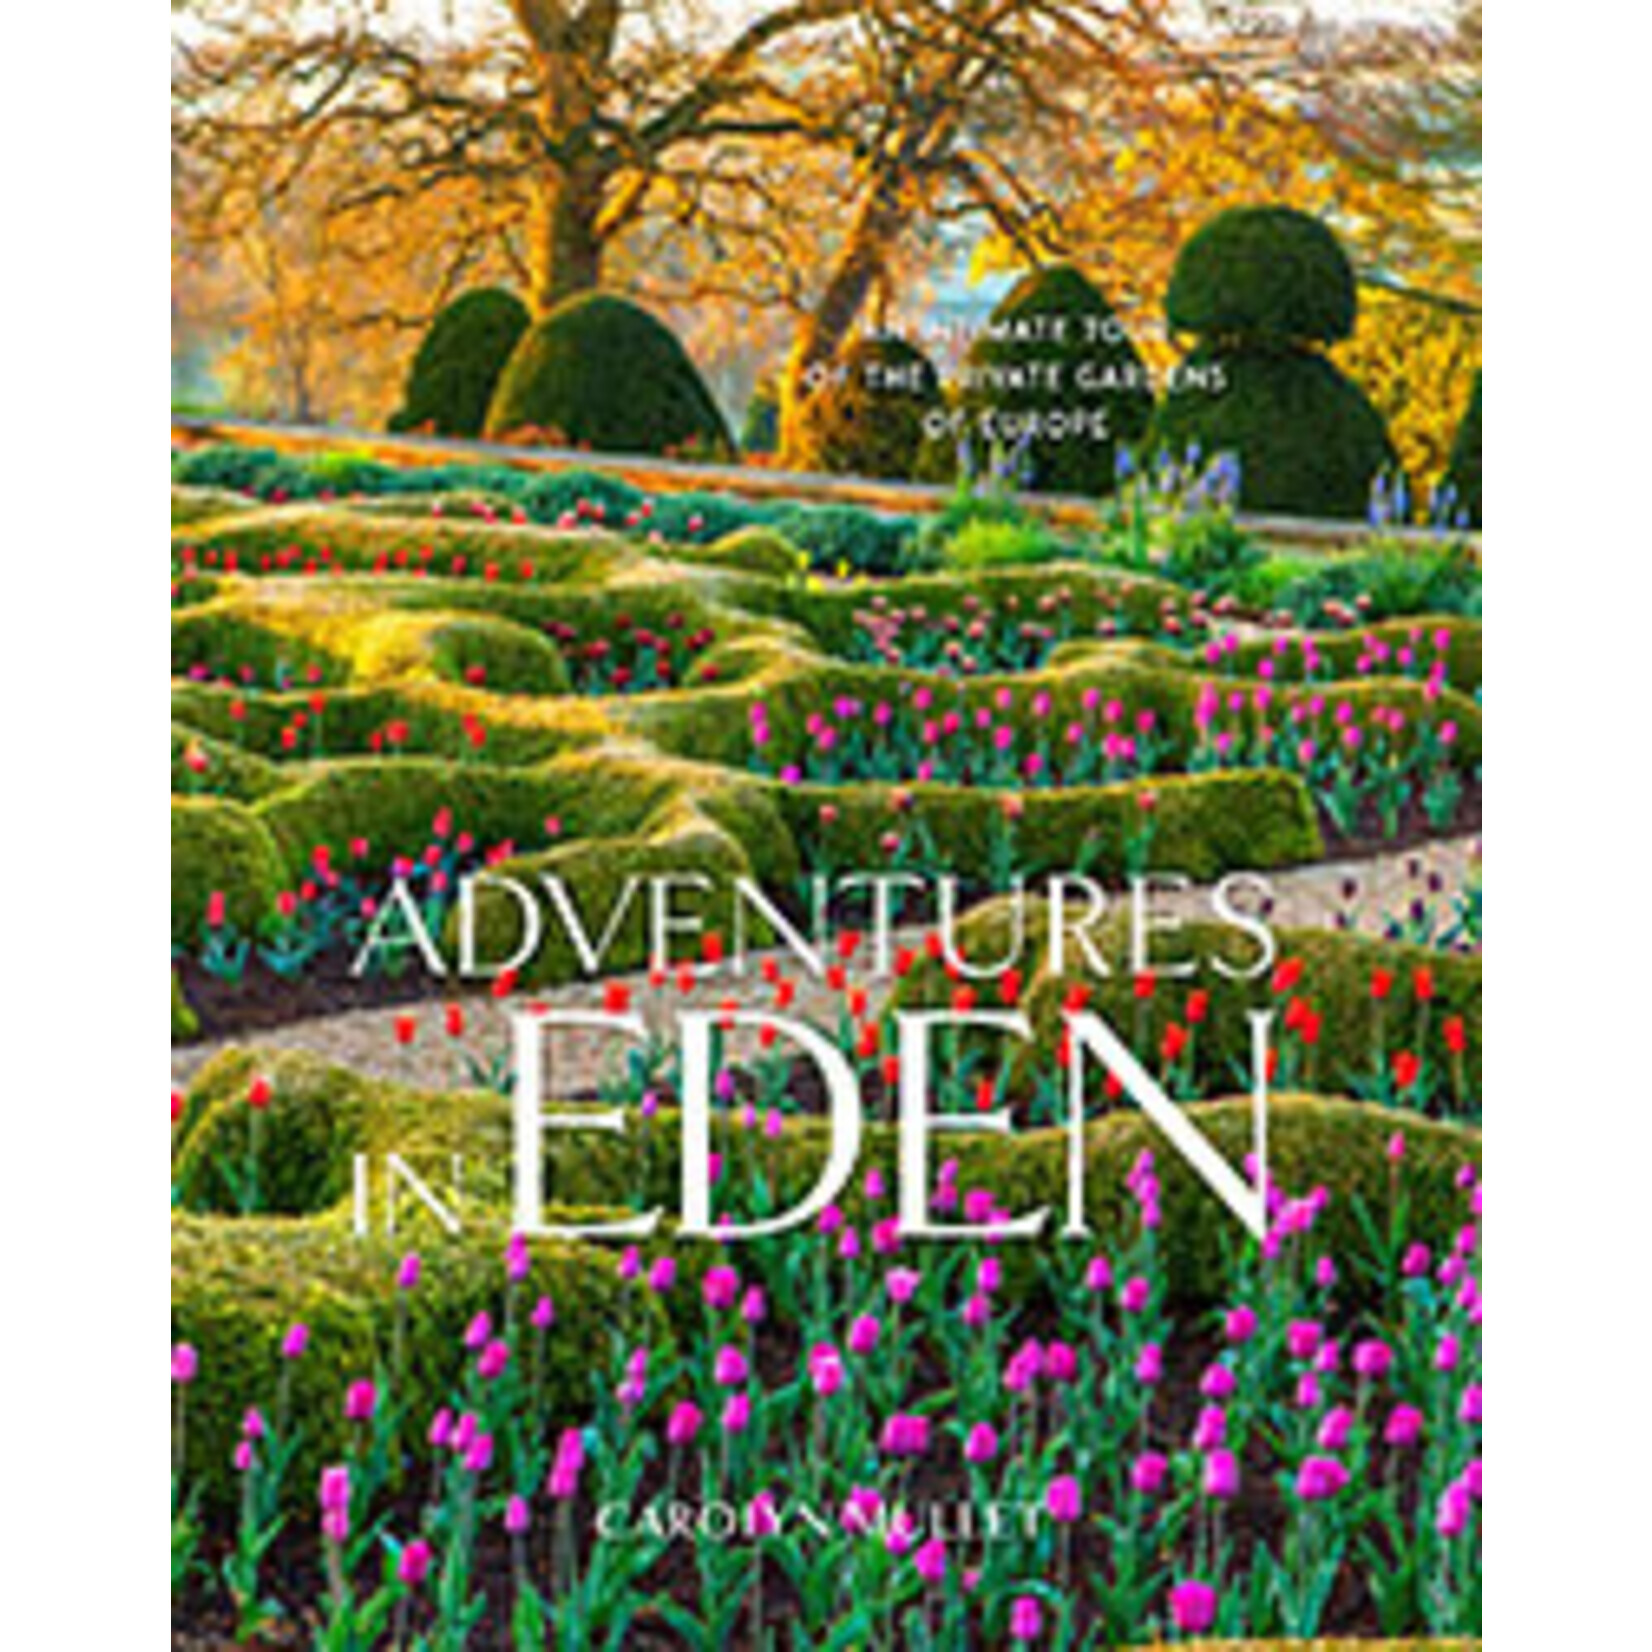 Website Adventures in Eden